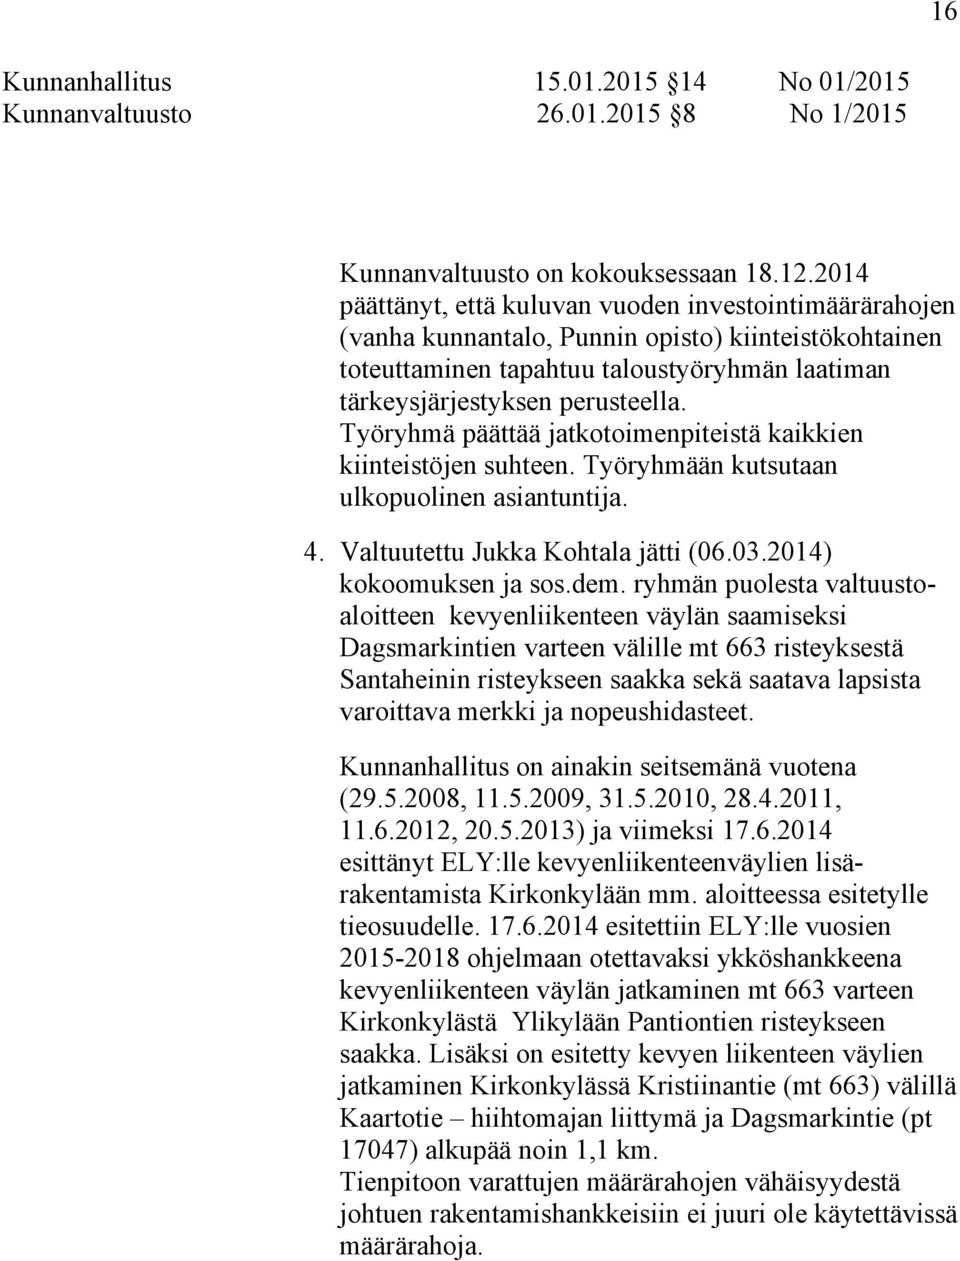 Työryhmä päättää jatkotoimenpiteistä kaikkien kiinteistöjen suhteen. Työryhmään kutsutaan ulkopuolinen asiantuntija. 4. Valtuutettu Jukka Kohtala jätti (06.03.2014) kokoomuksen ja sos.dem.